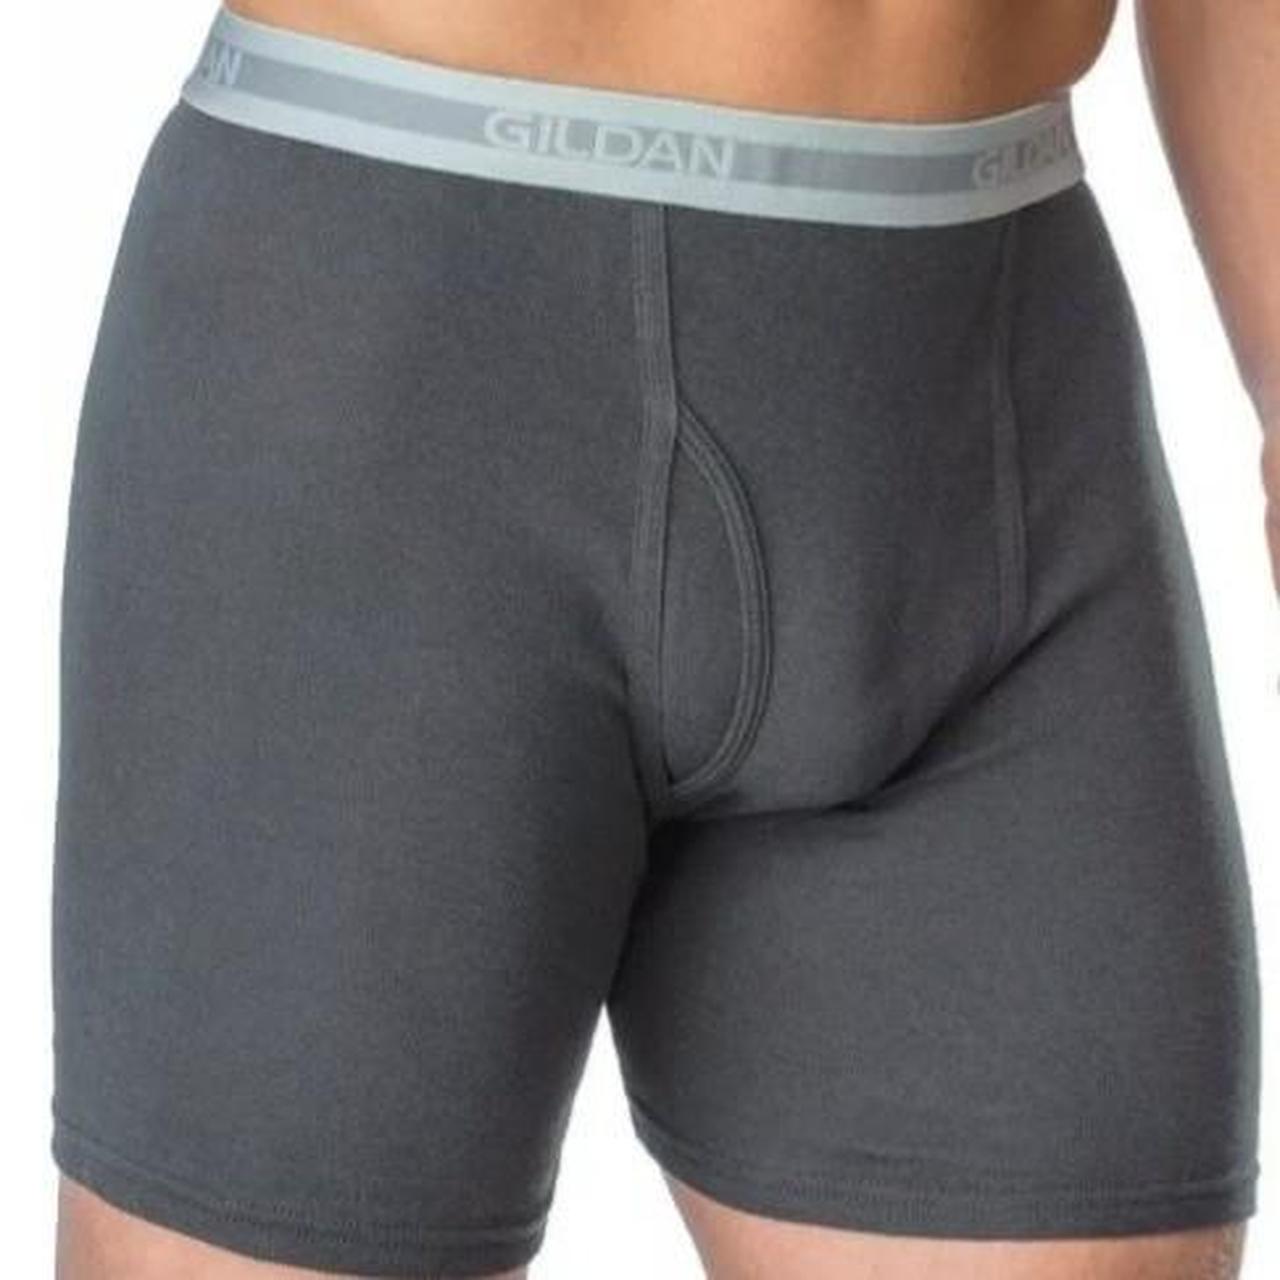 4 Pack Men's Gildan Boxer Brief Premium Waistband Underwear 2XL 44